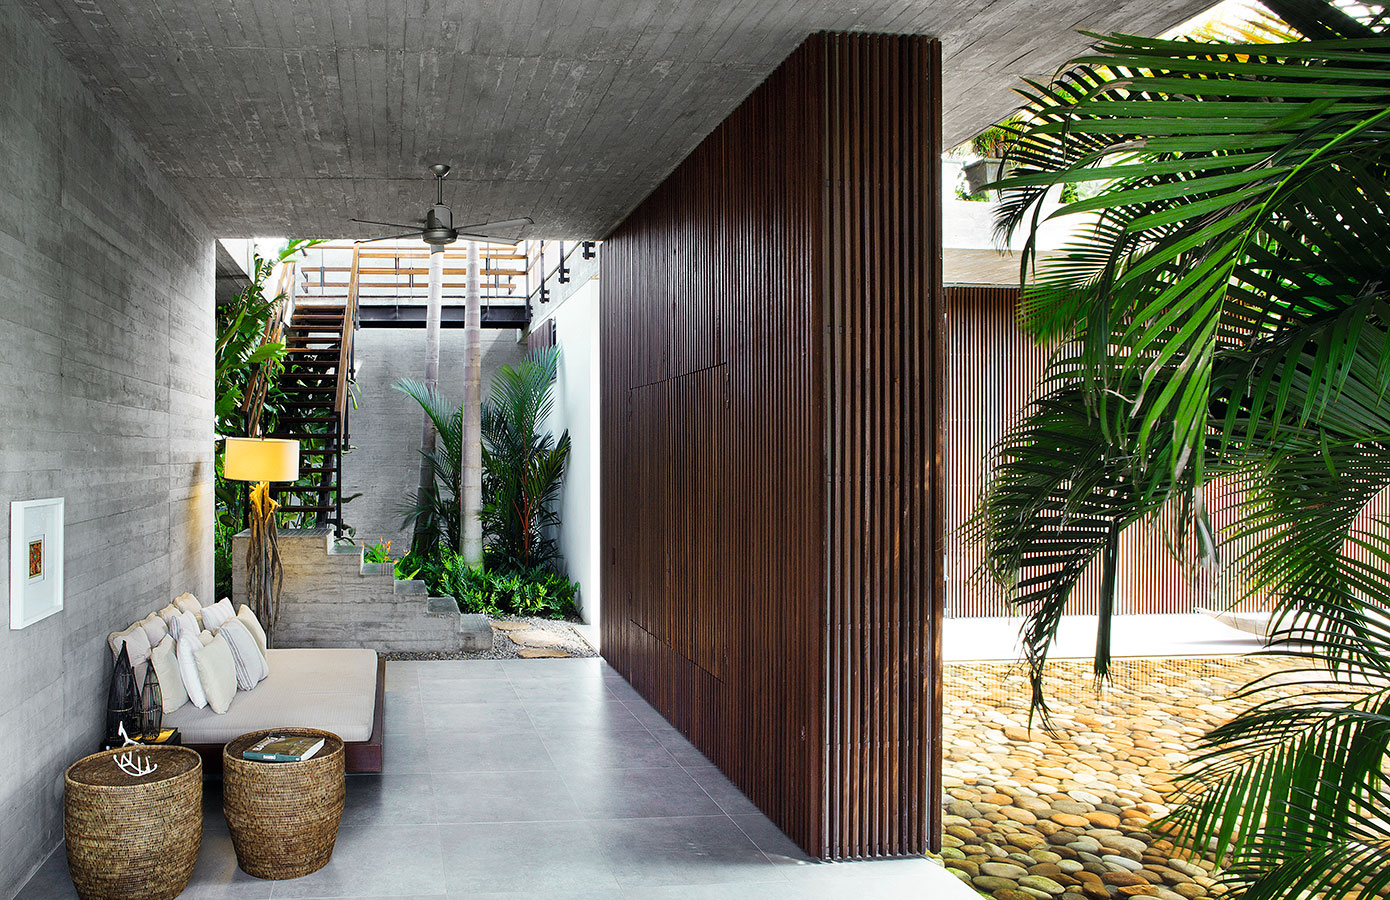 Racionalismo tropical: arquitectura de concreto y madera en una tierra cálida colombiana